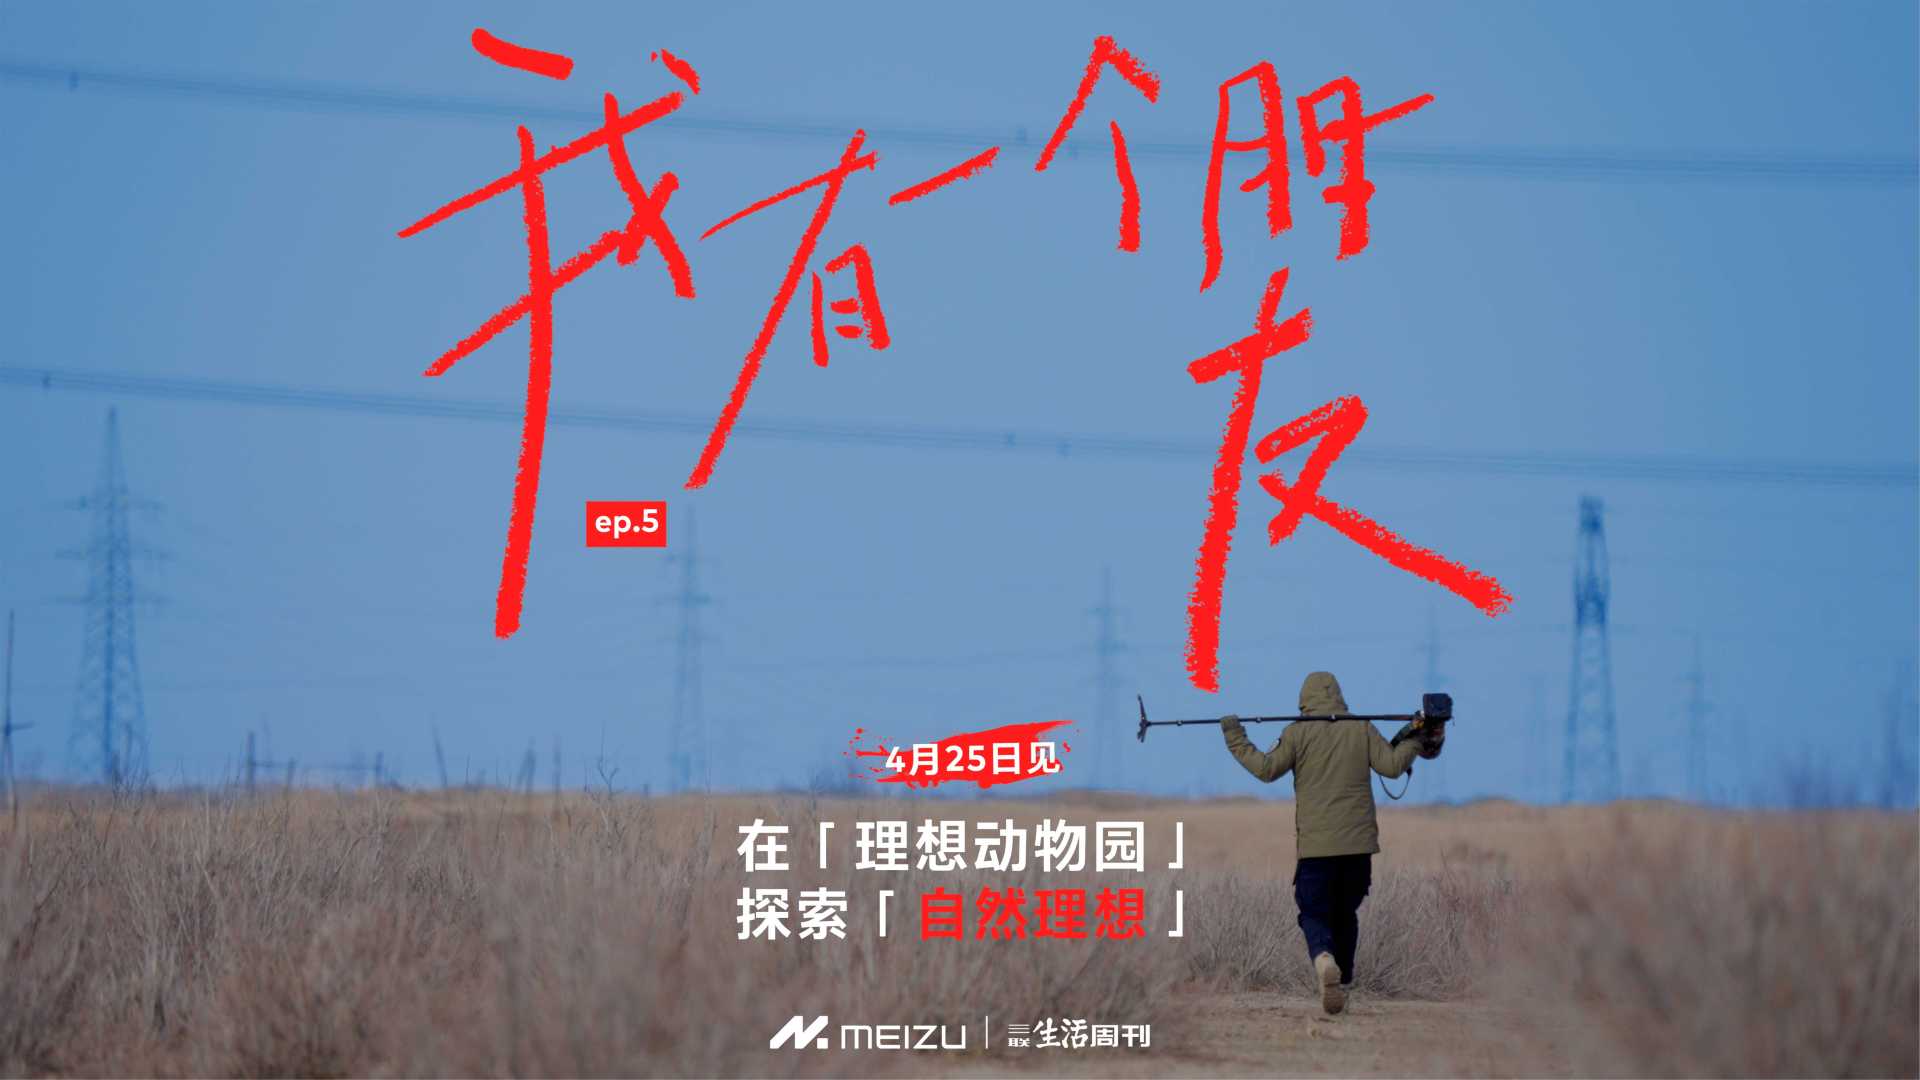 魅族X三联生活周刊  #我有一个朋友# 魅友人物纪录片第5集预告 花蚀